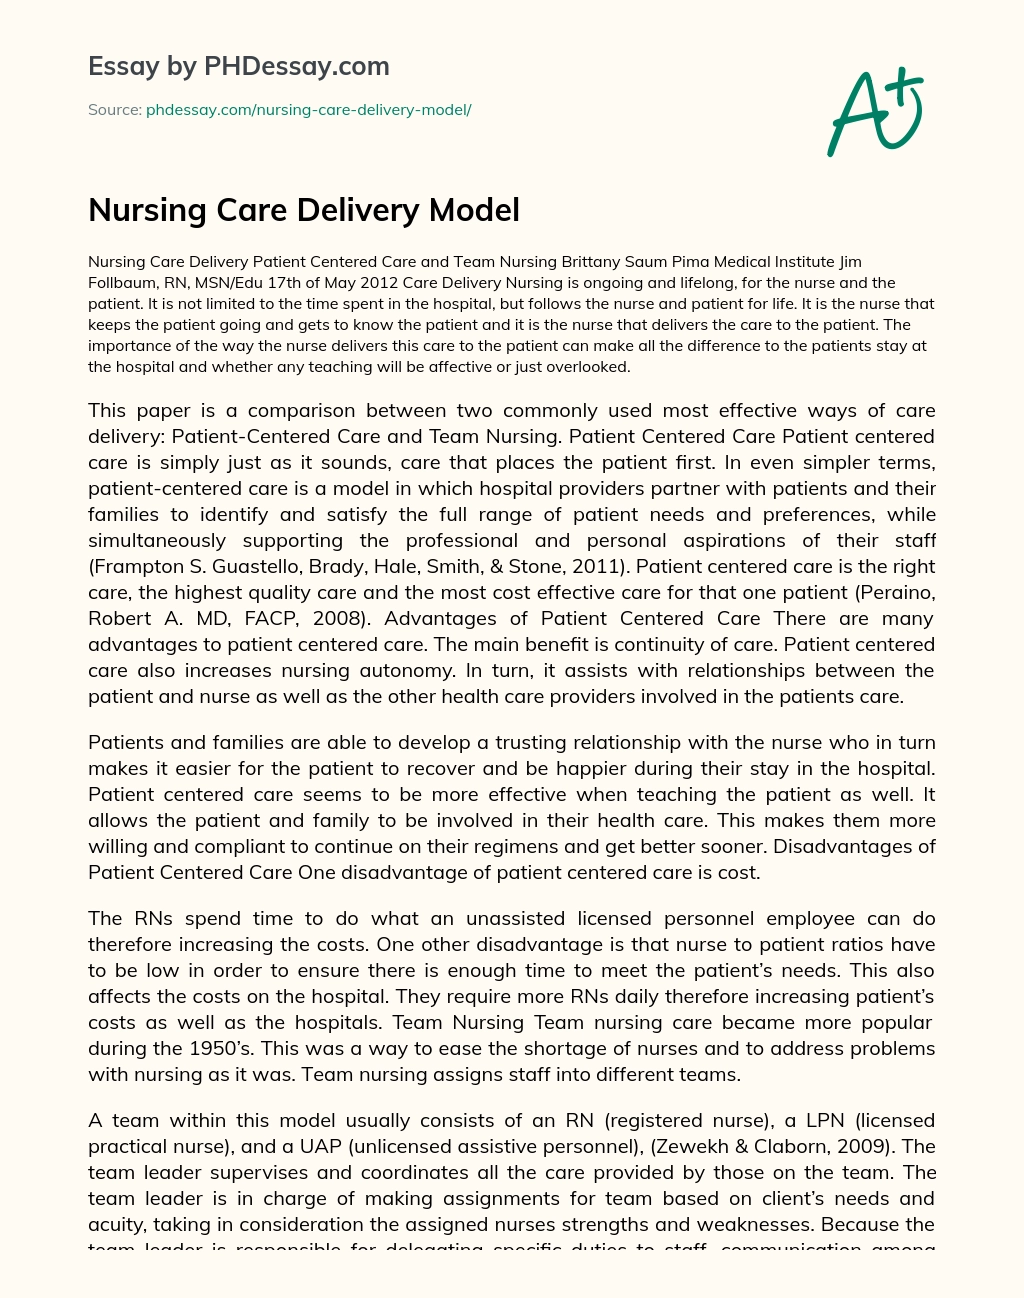 Nursing Care Delivery Model essay